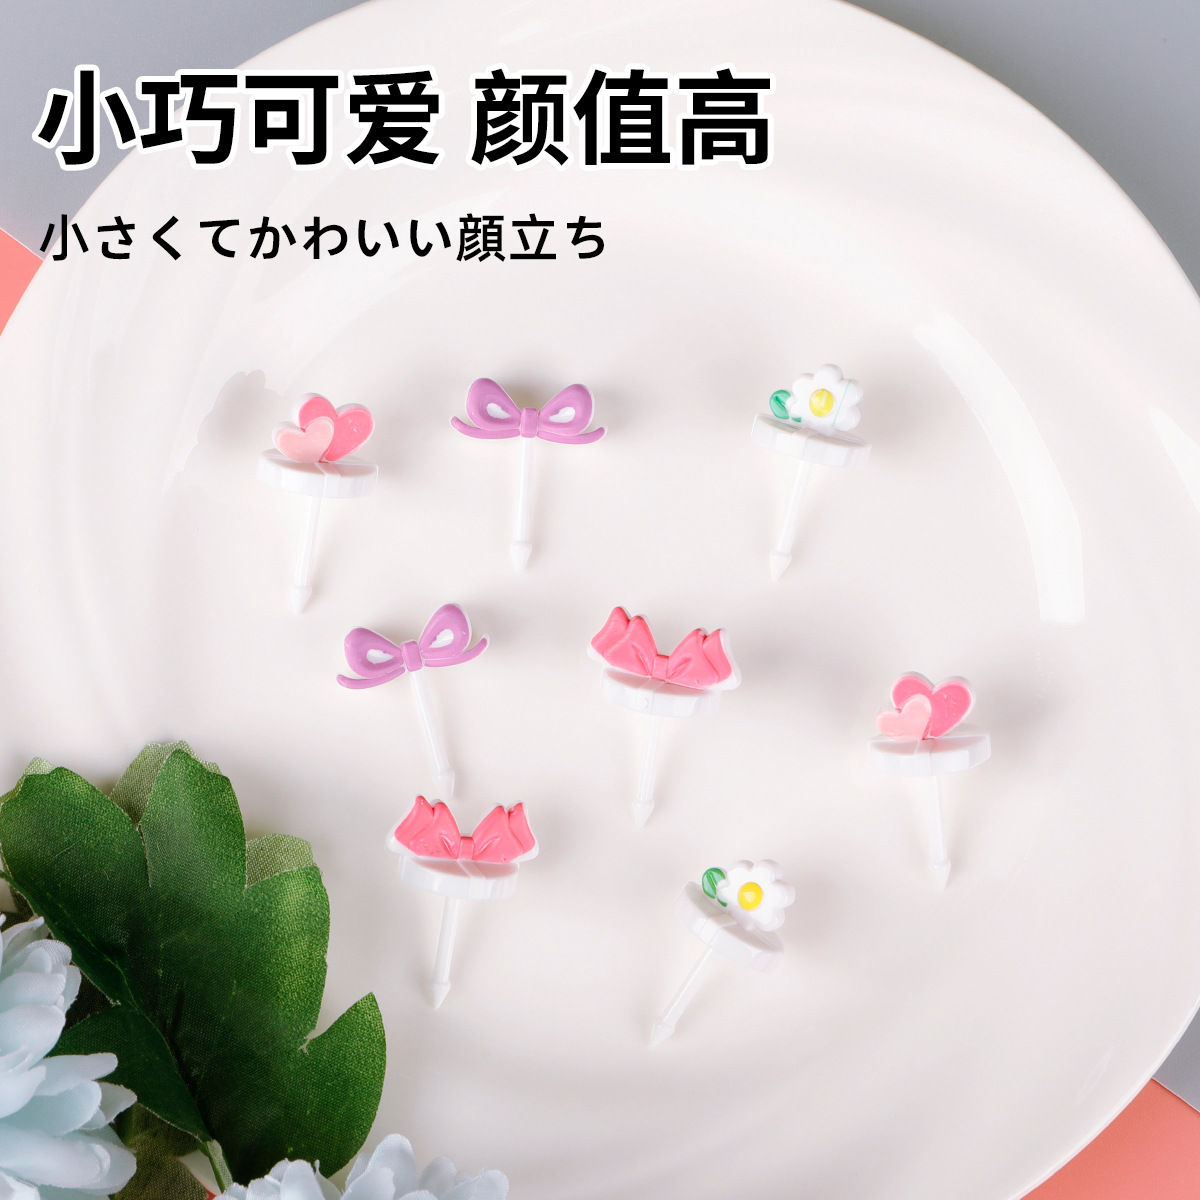 日式迷你塑料便当装饰签卡通帽子儿童水果叉子蝴蝶结爱心水果签